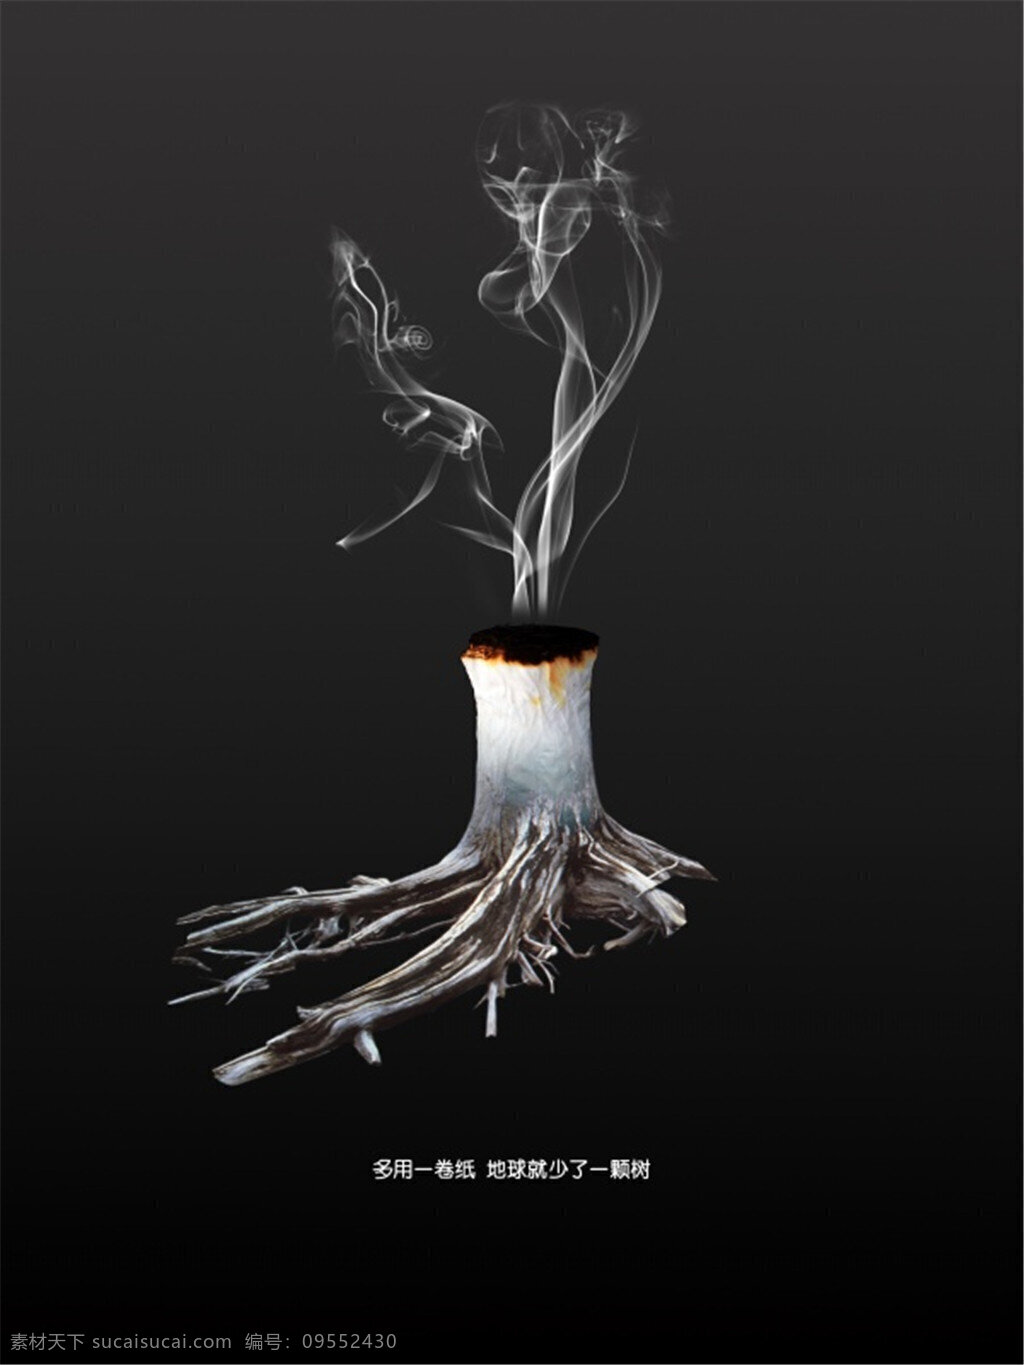 保护 树木 环保 招贴 保护树木 公益海报 宣传海报 吸烟有害健康 黑色